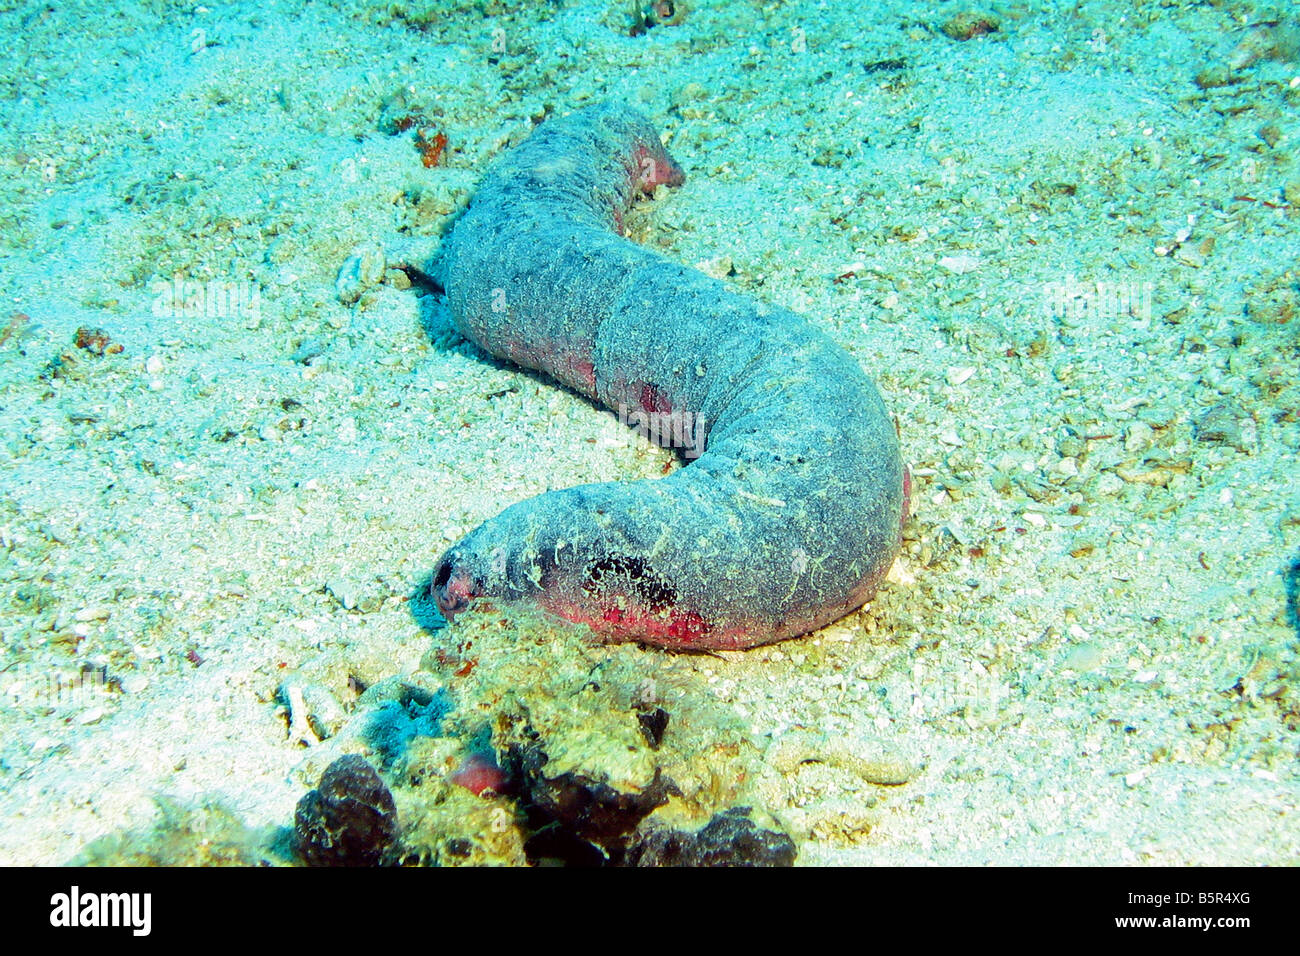 Grand concombre de mer (Sea slug) sur l'océan, Lankayan Island, Sabah, Malaisie Banque D'Images